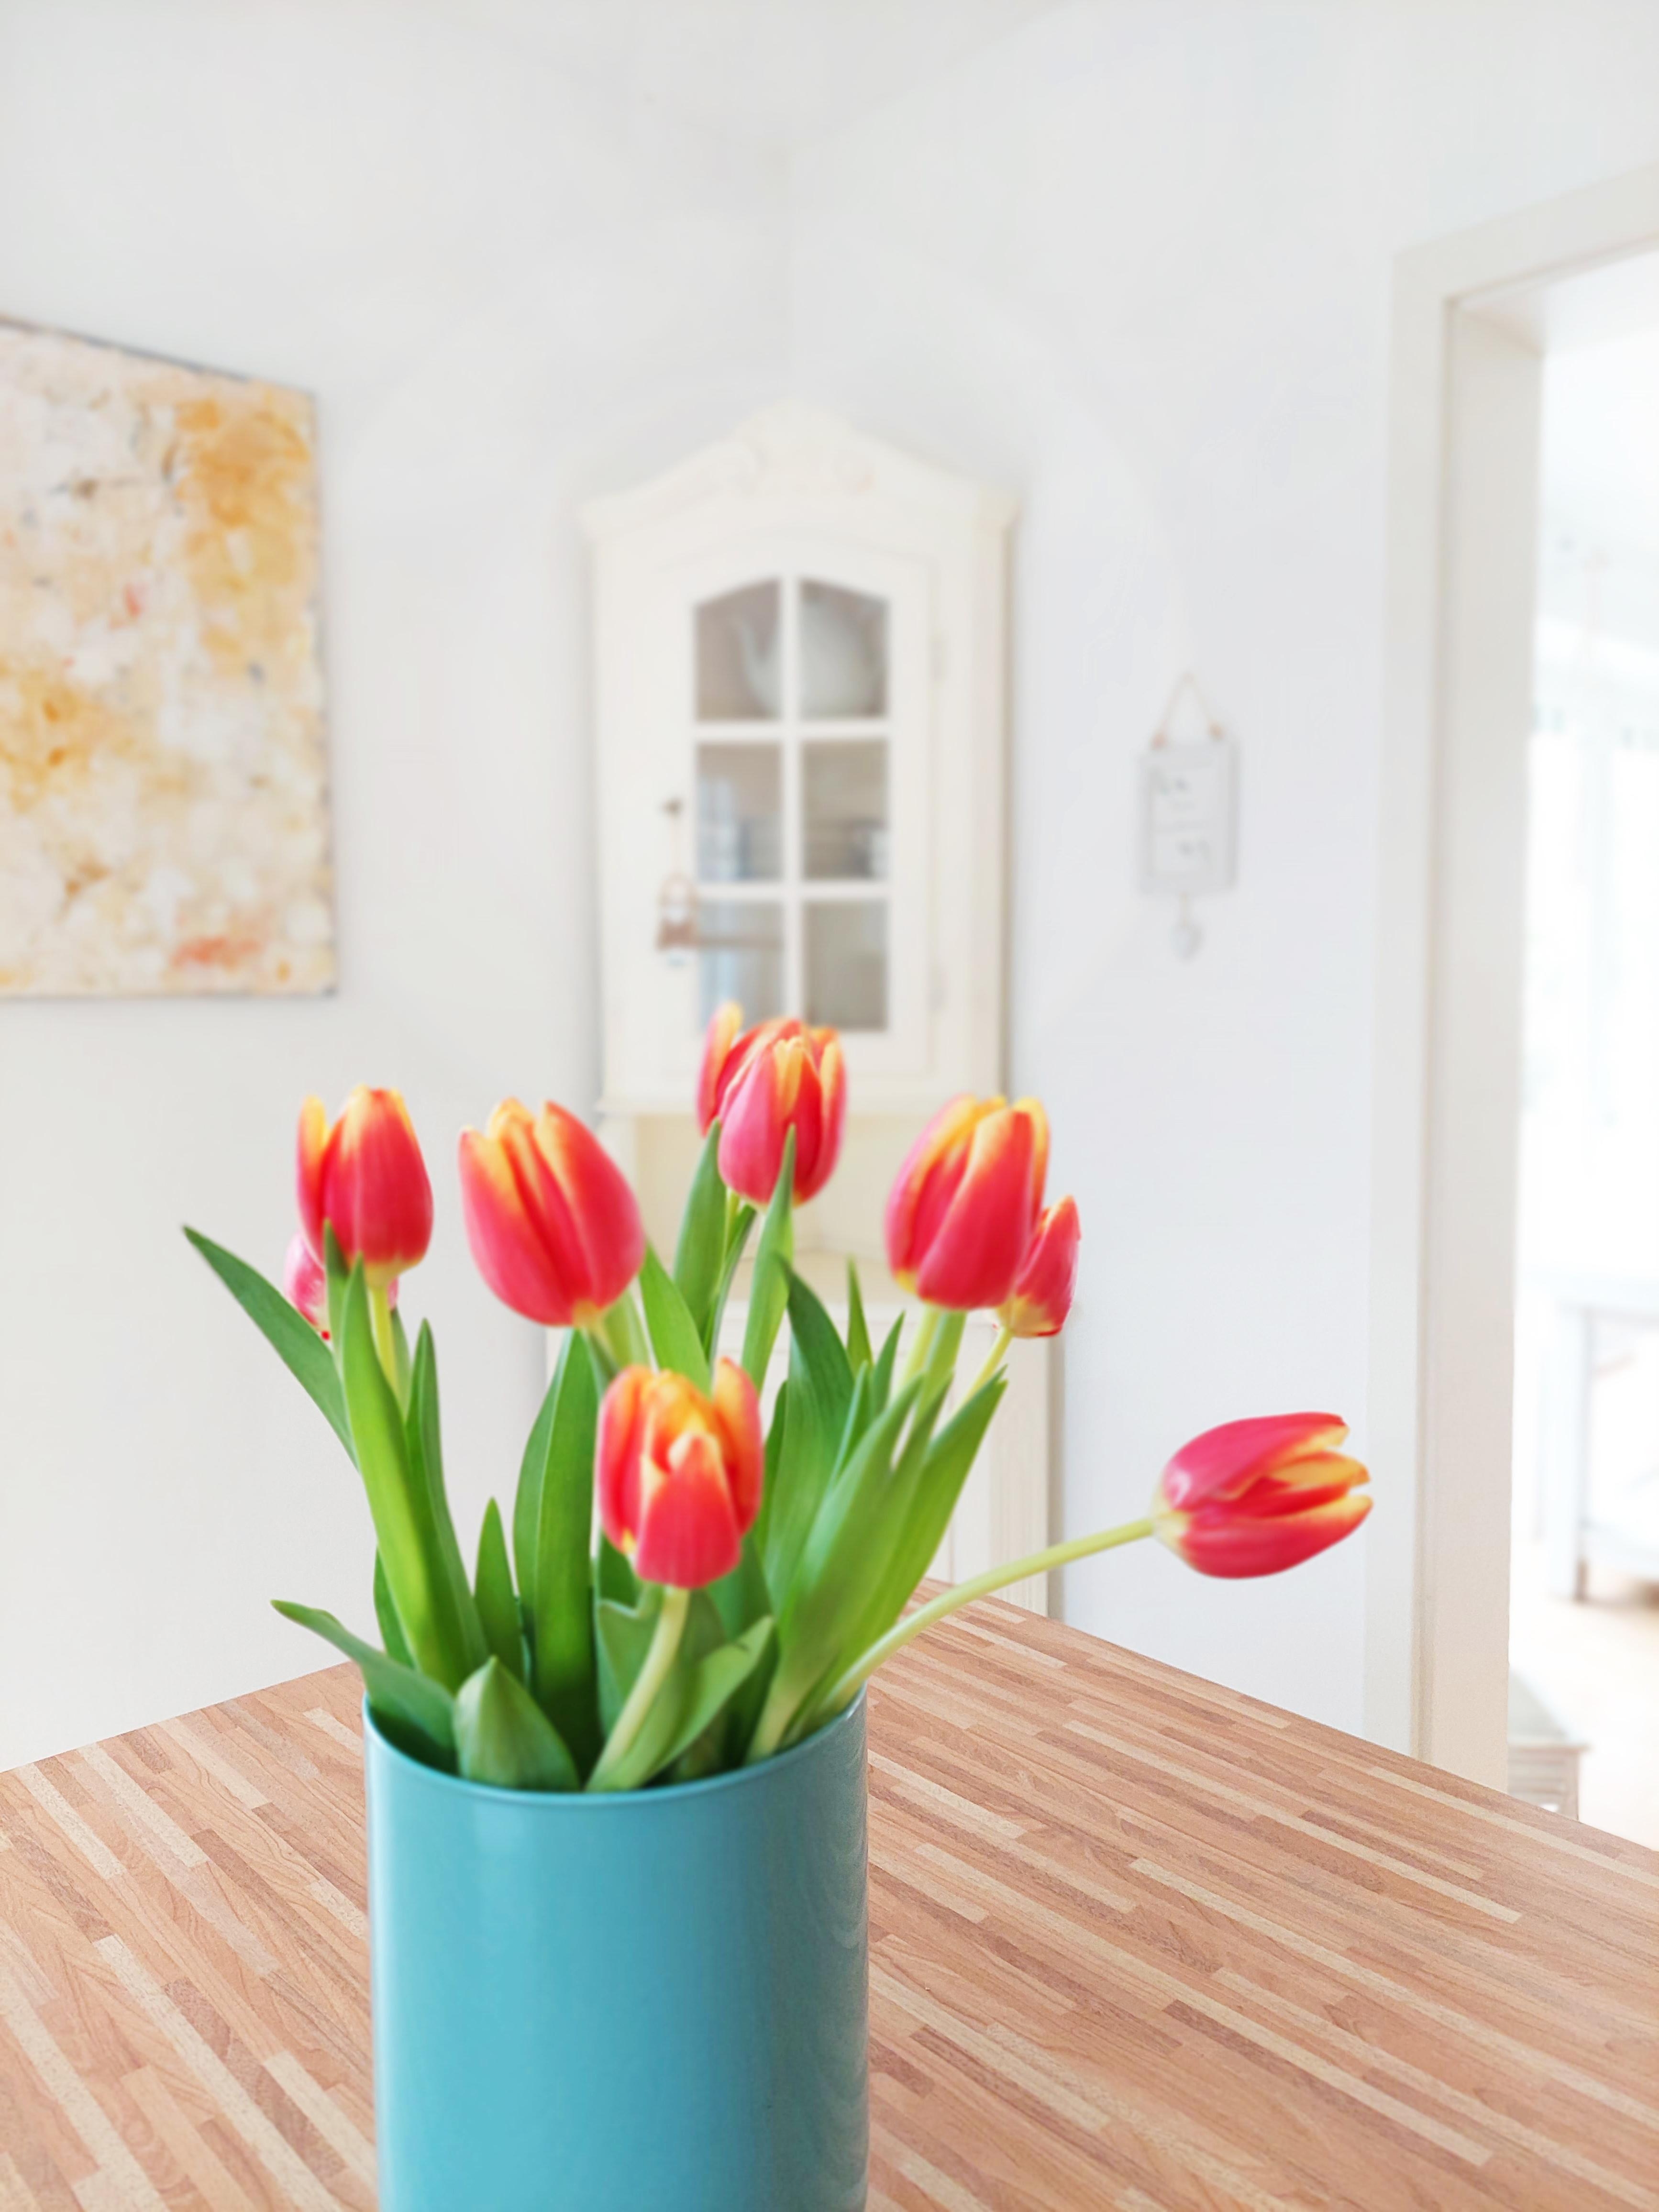 T u l p e n ♡
#tulpen #blumen #küche #einrichtung #wandbild